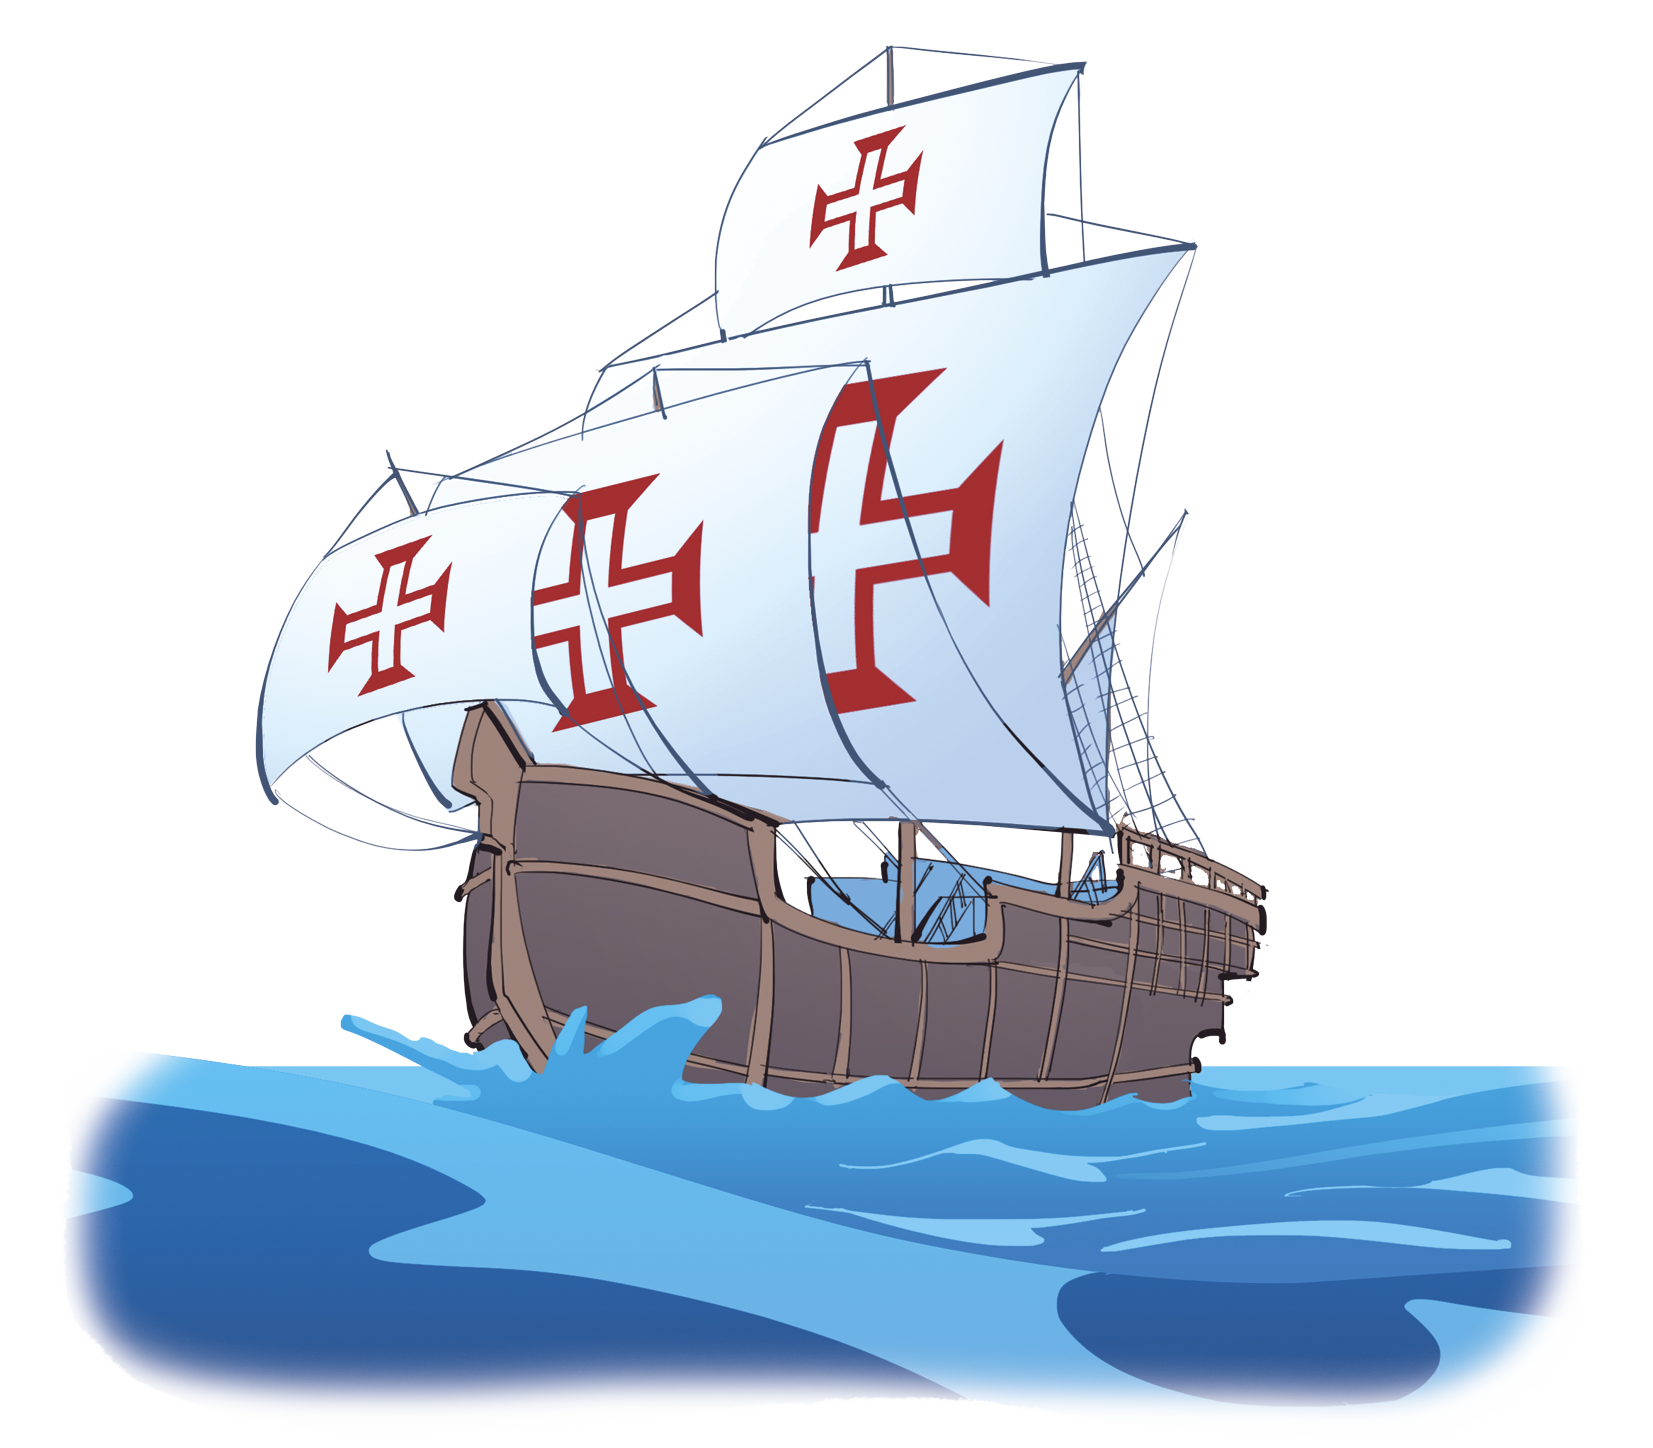 Ilustração. Barco de madeira com velas brancas estendidas e estampadas com uma cruz vermelha. Ele está no mar.